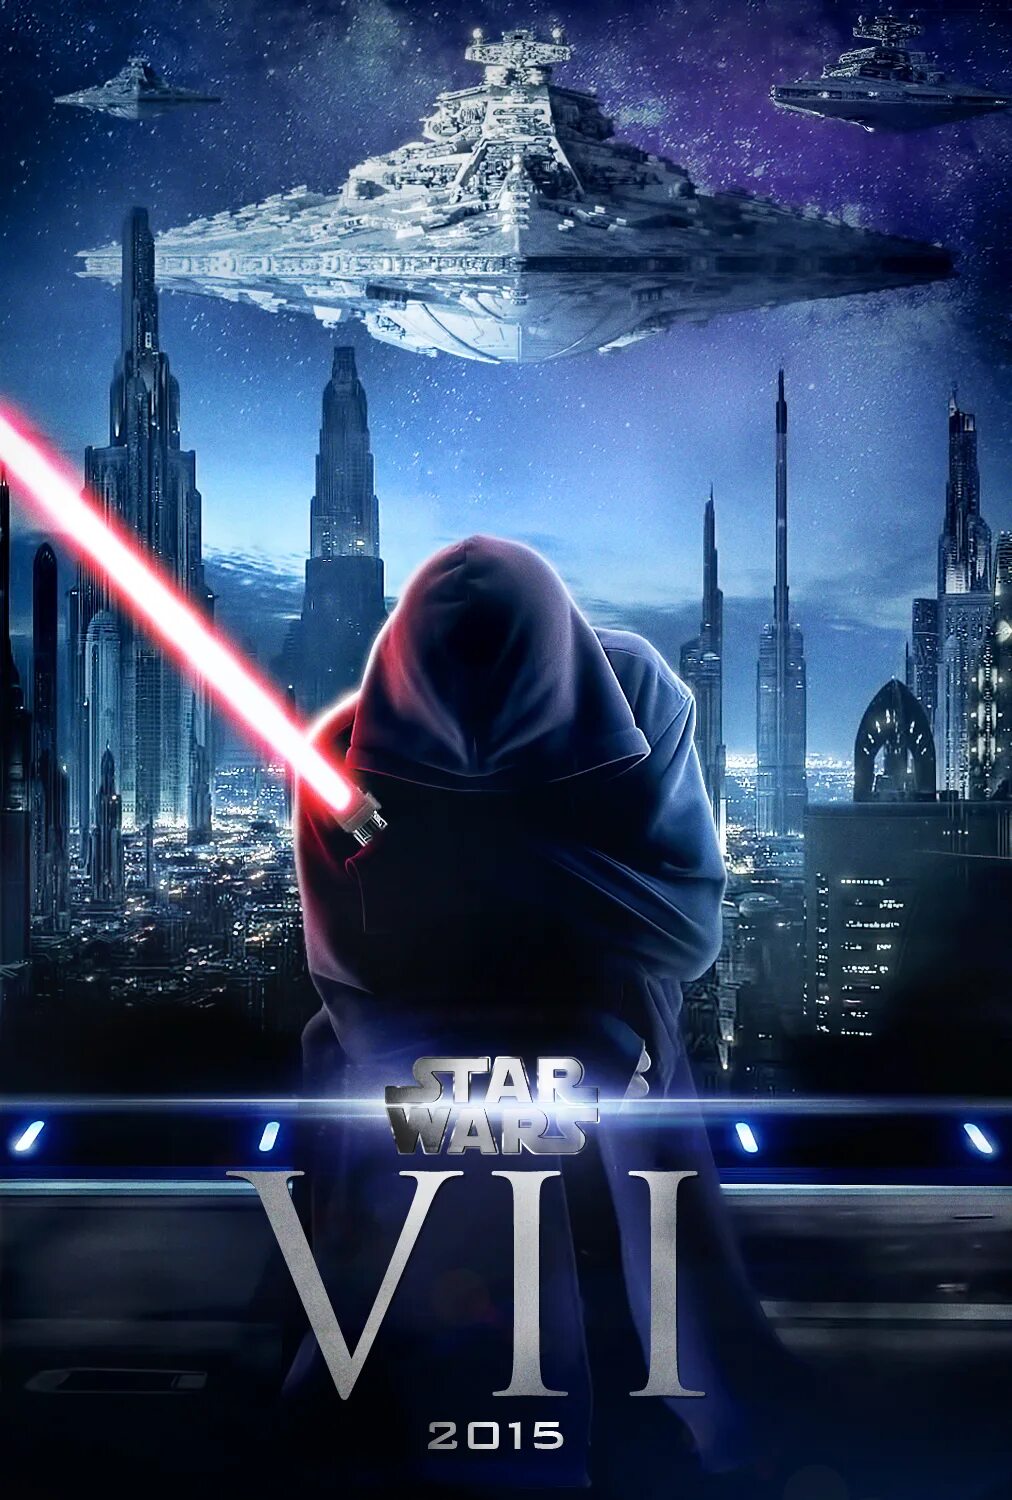 Posters 7. Звёздные войны эпизод 7 Пробуждение силы. Star Wars 7 poster. Звёздные войны эпизод 7 Постер. Звёздные войны 7 эпизодов Империя.